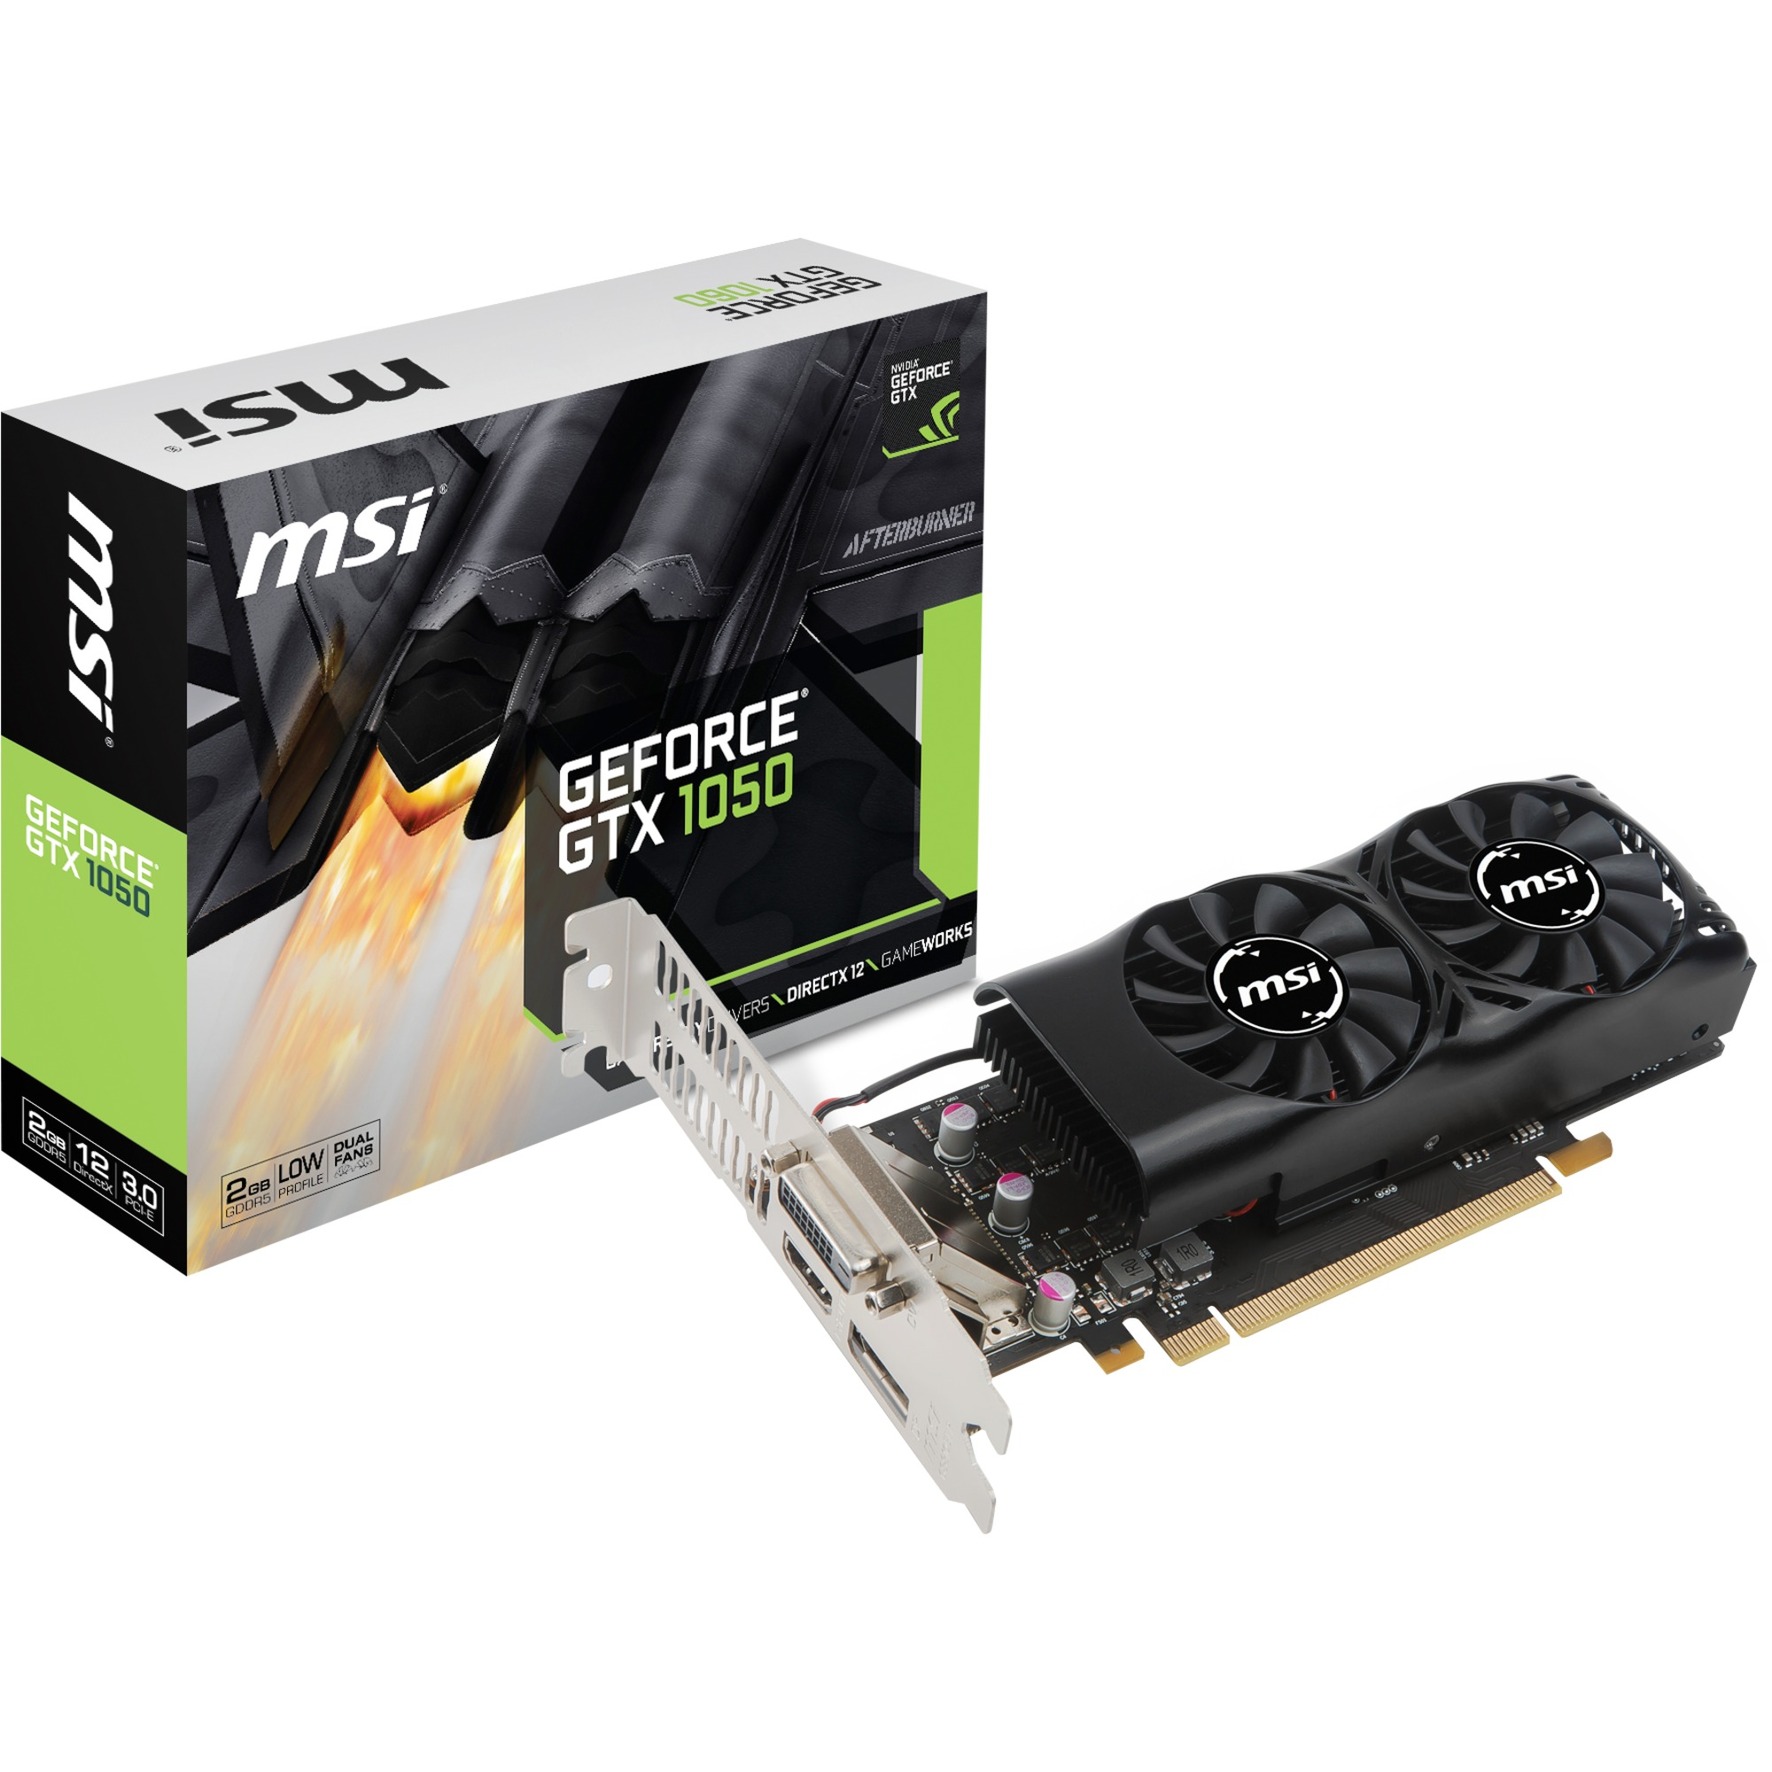 V809-2410R karta graficzna GeForce GTX 1050 2 GB GDDR5